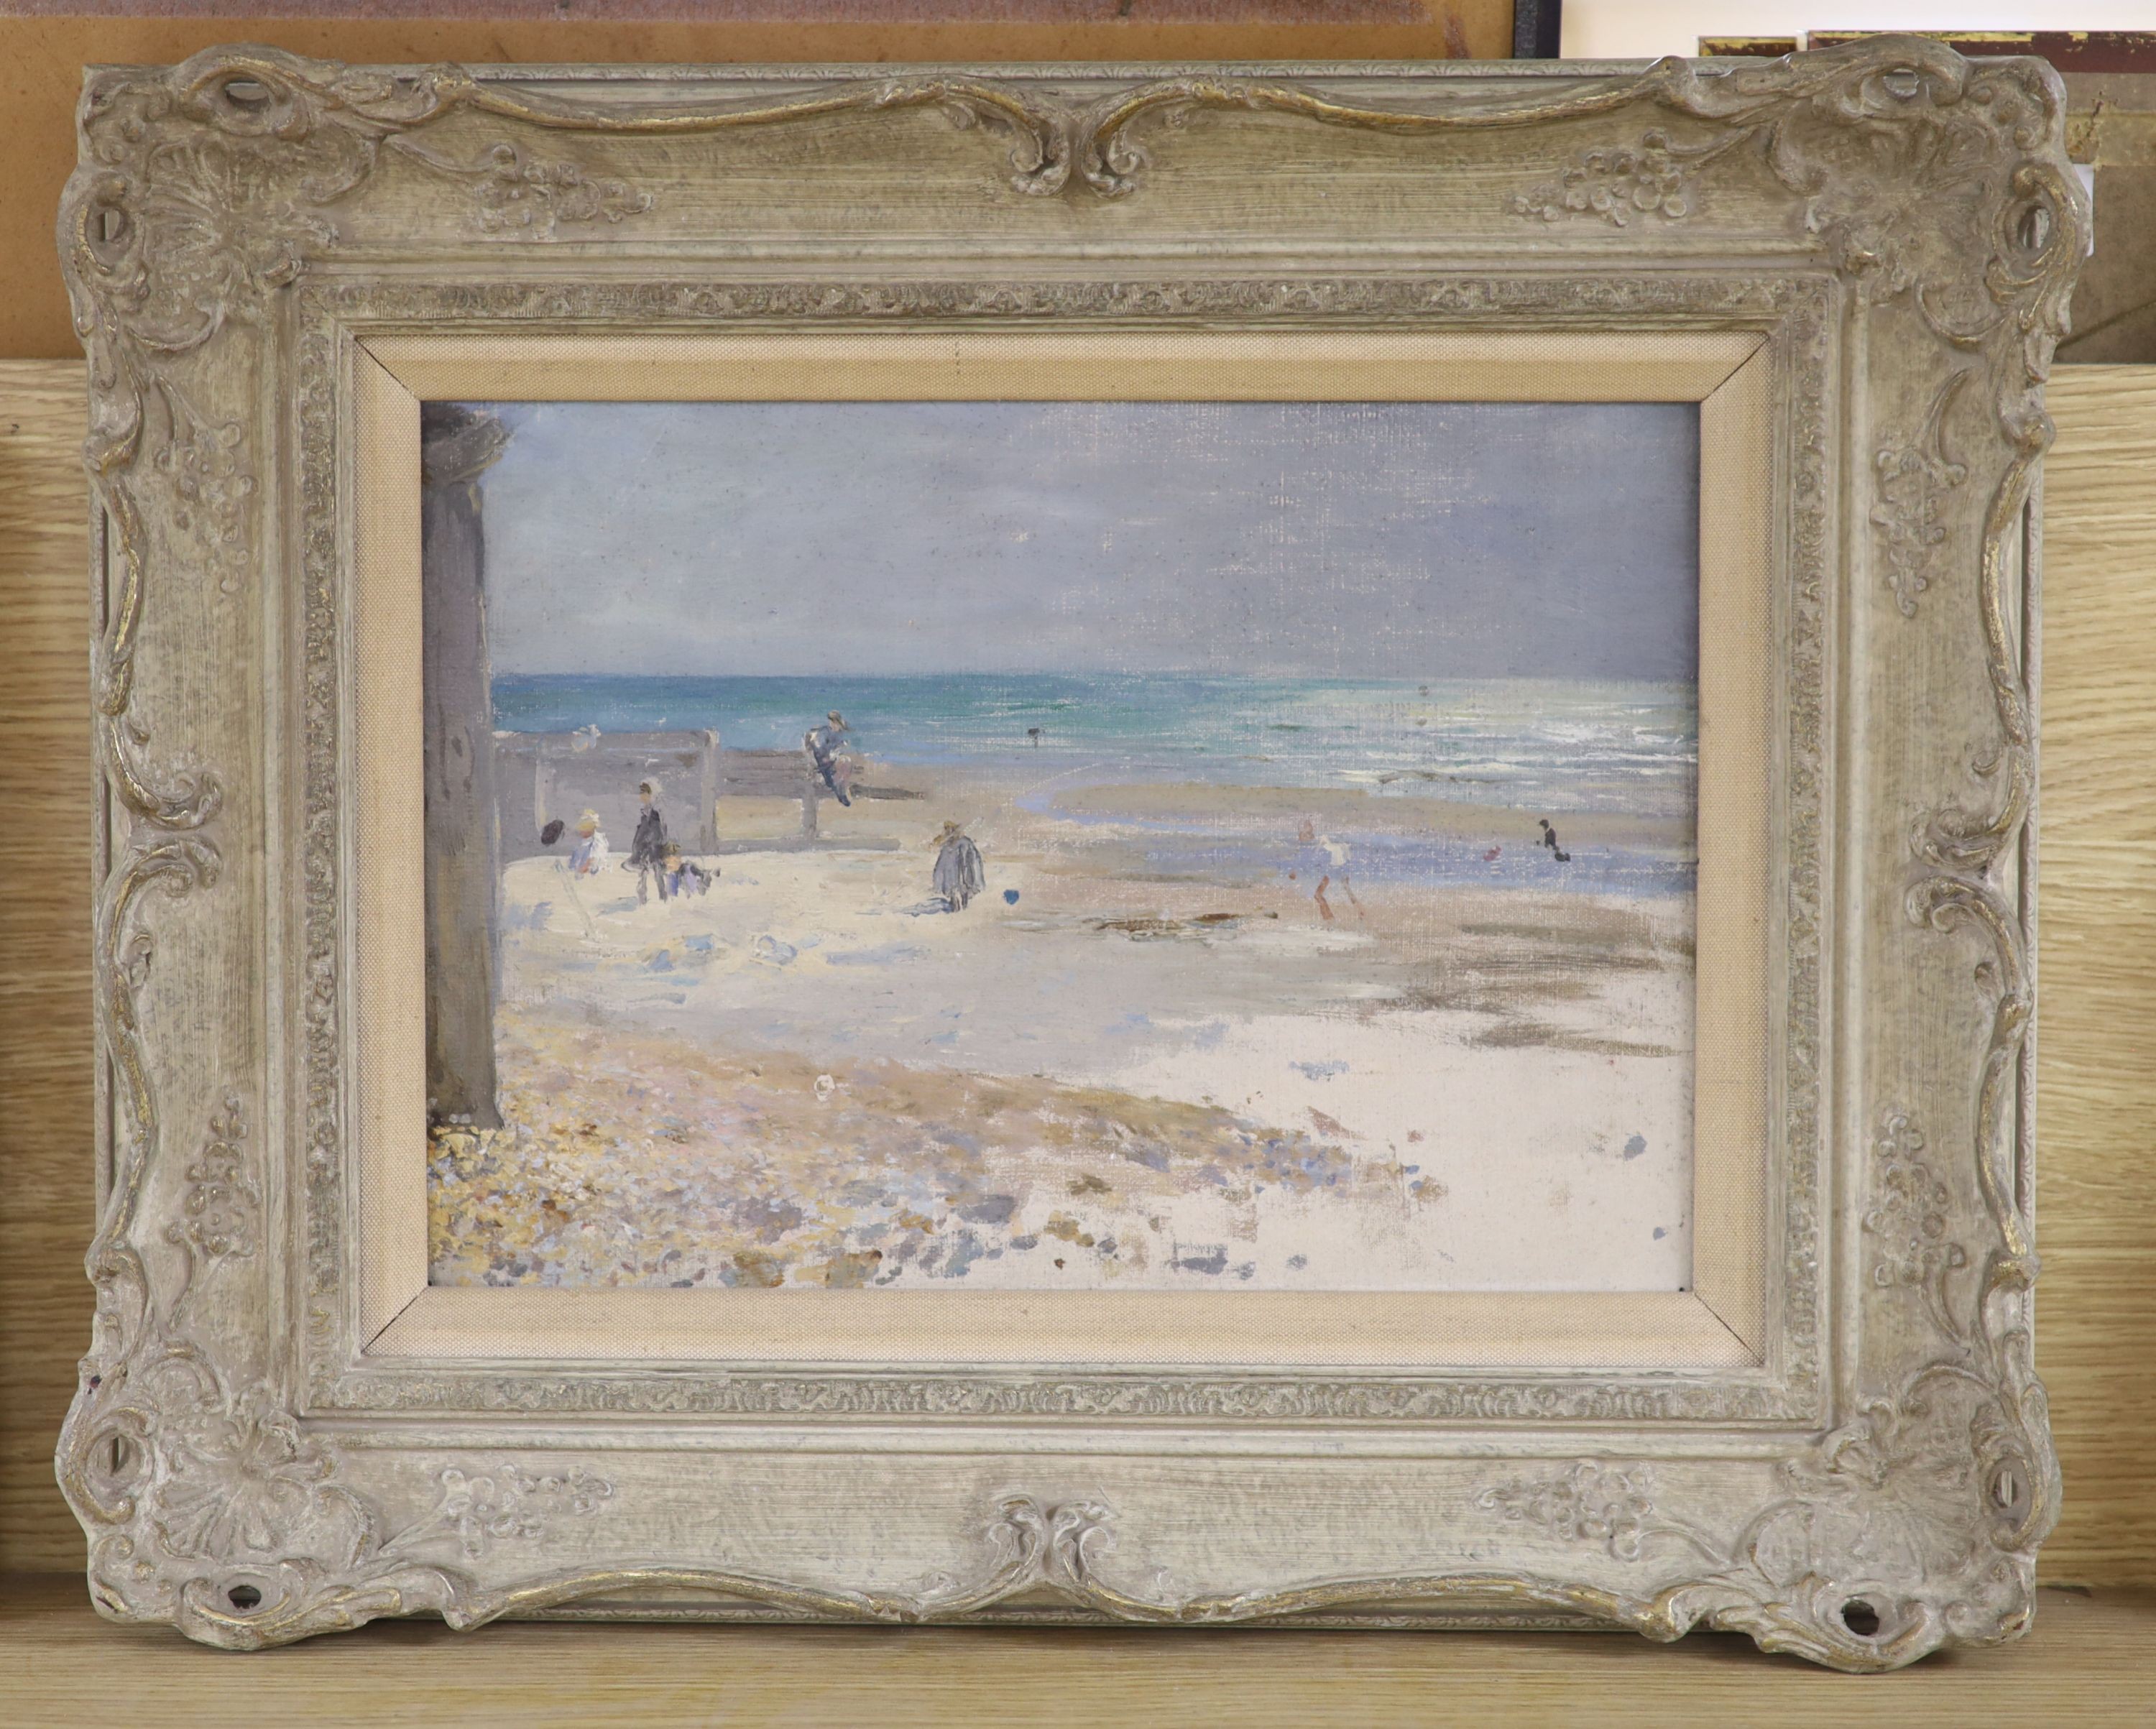 Kate Elizabeth Olver (1881-1960), oil on board, Beach Scene, inscribed verso, 24 x 34cm